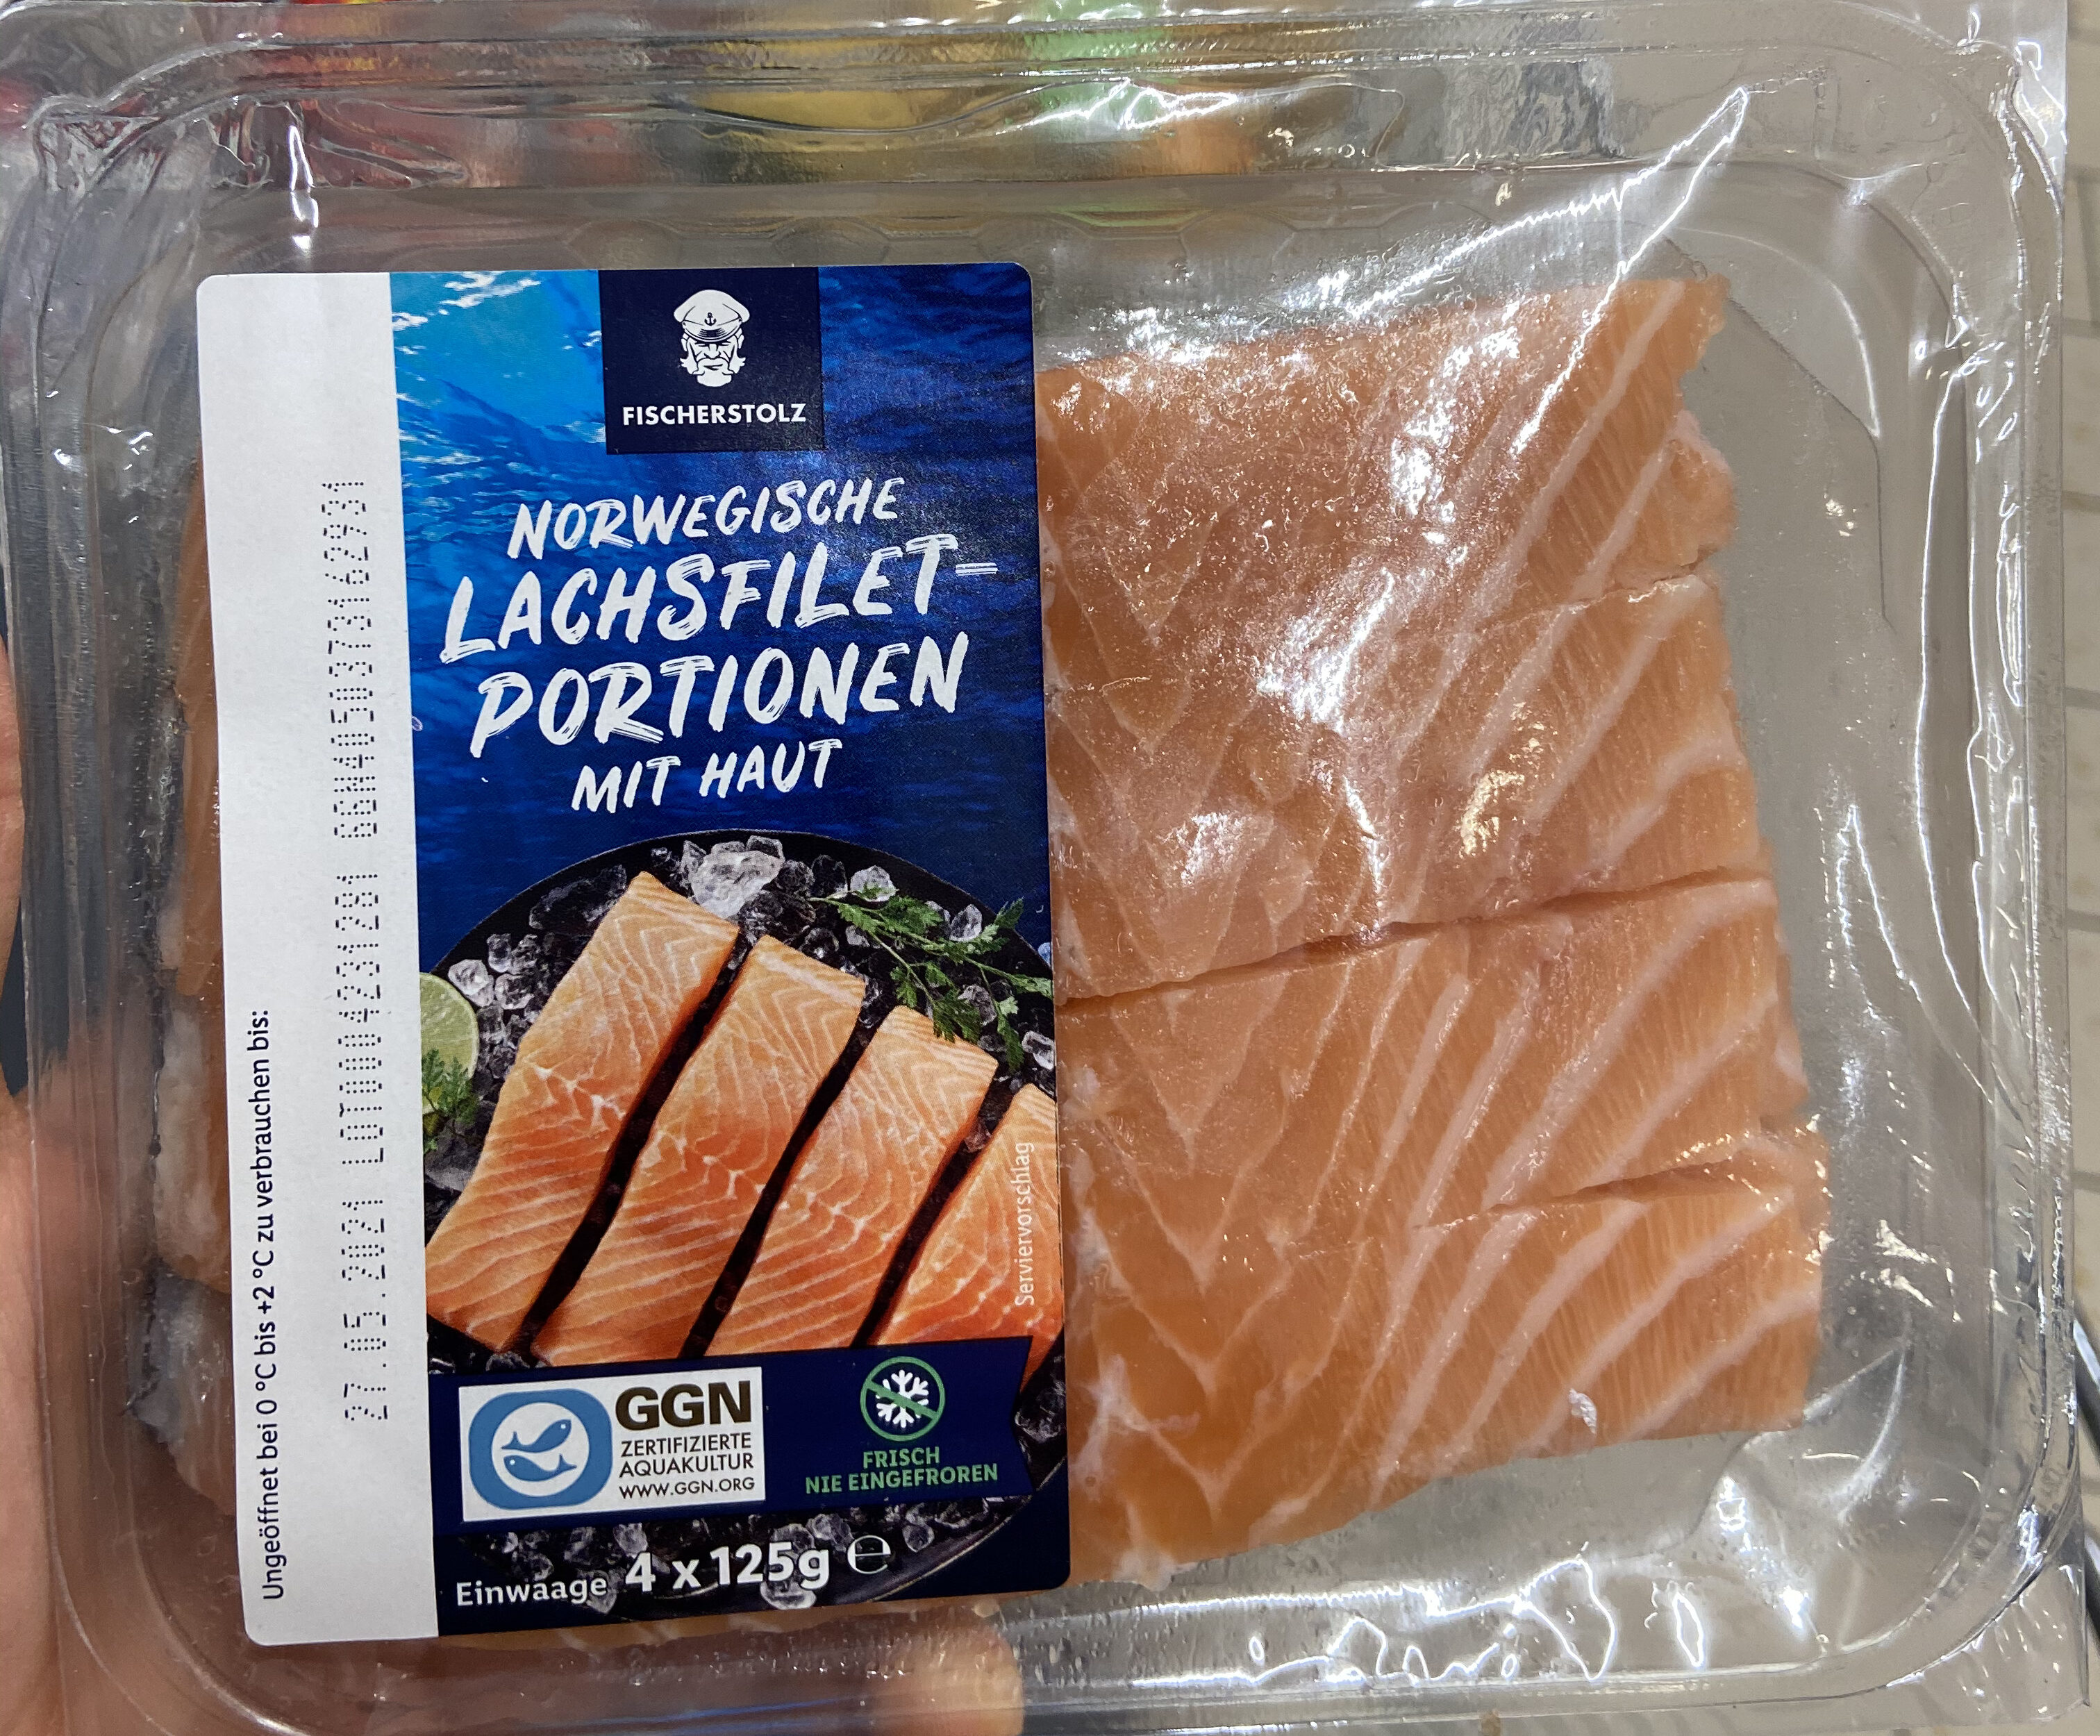 Norwegische Lachsfilet-Portionen - Product - de